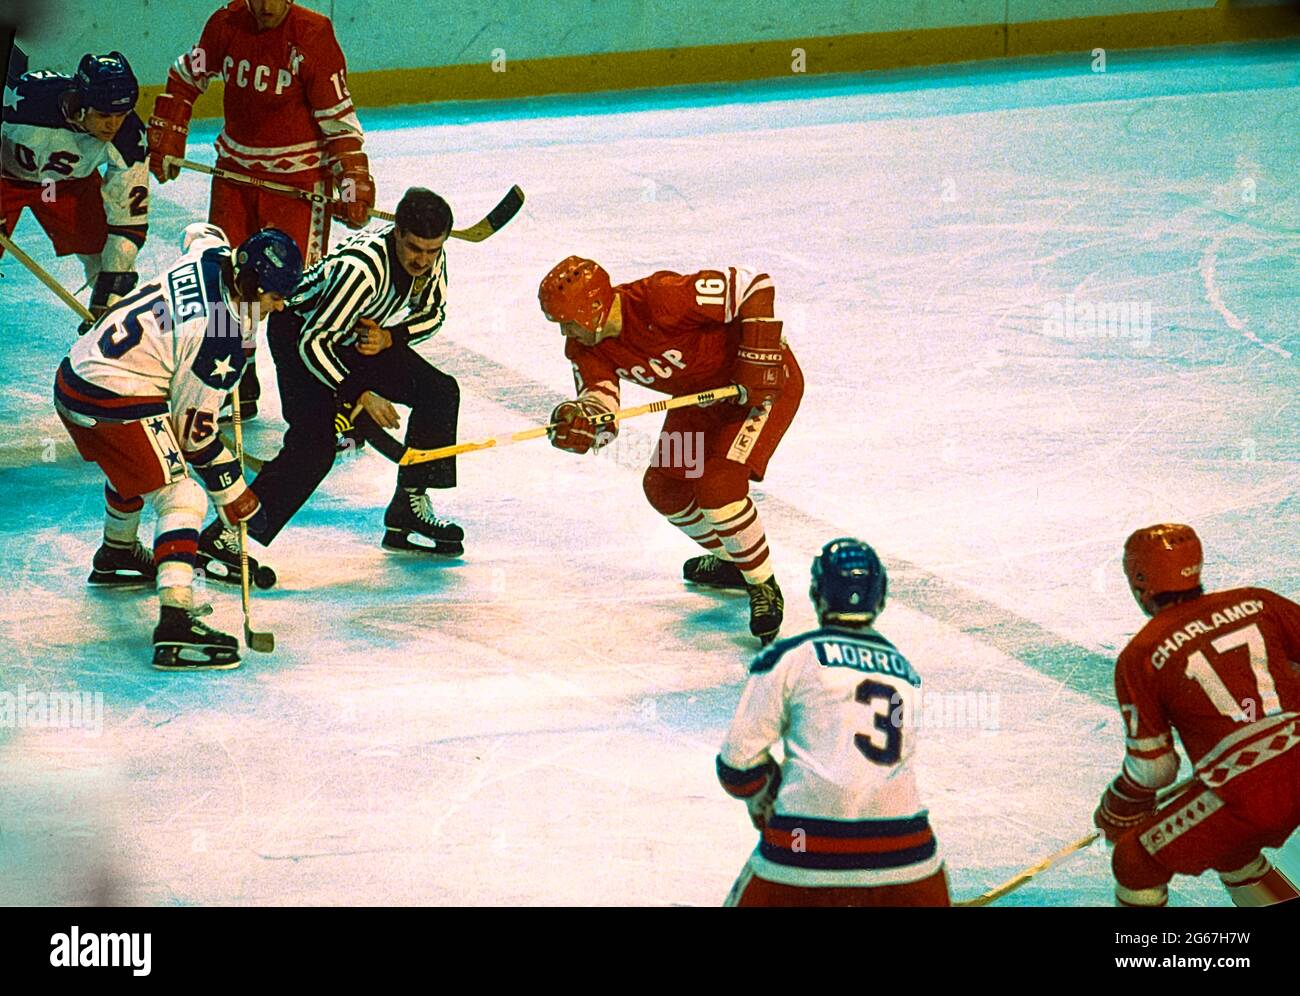 Mark Wells (USA) et Vladimir Petrov (URSS) affrontent lors de la demi-finale du hockey sur glace masculin aux Jeux Olympiques d'hiver de 1980. Banque D'Images